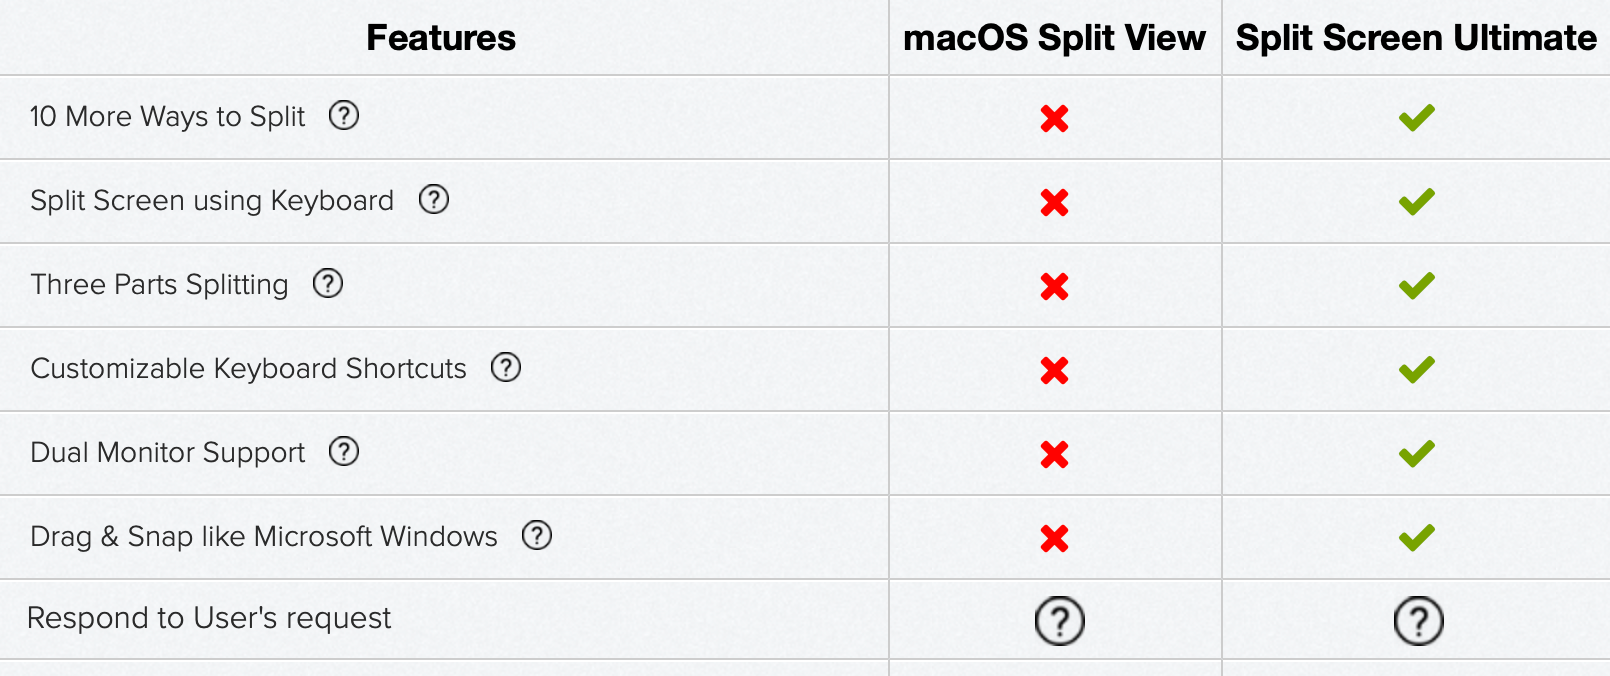 Split Screen Ultimate for Mac review